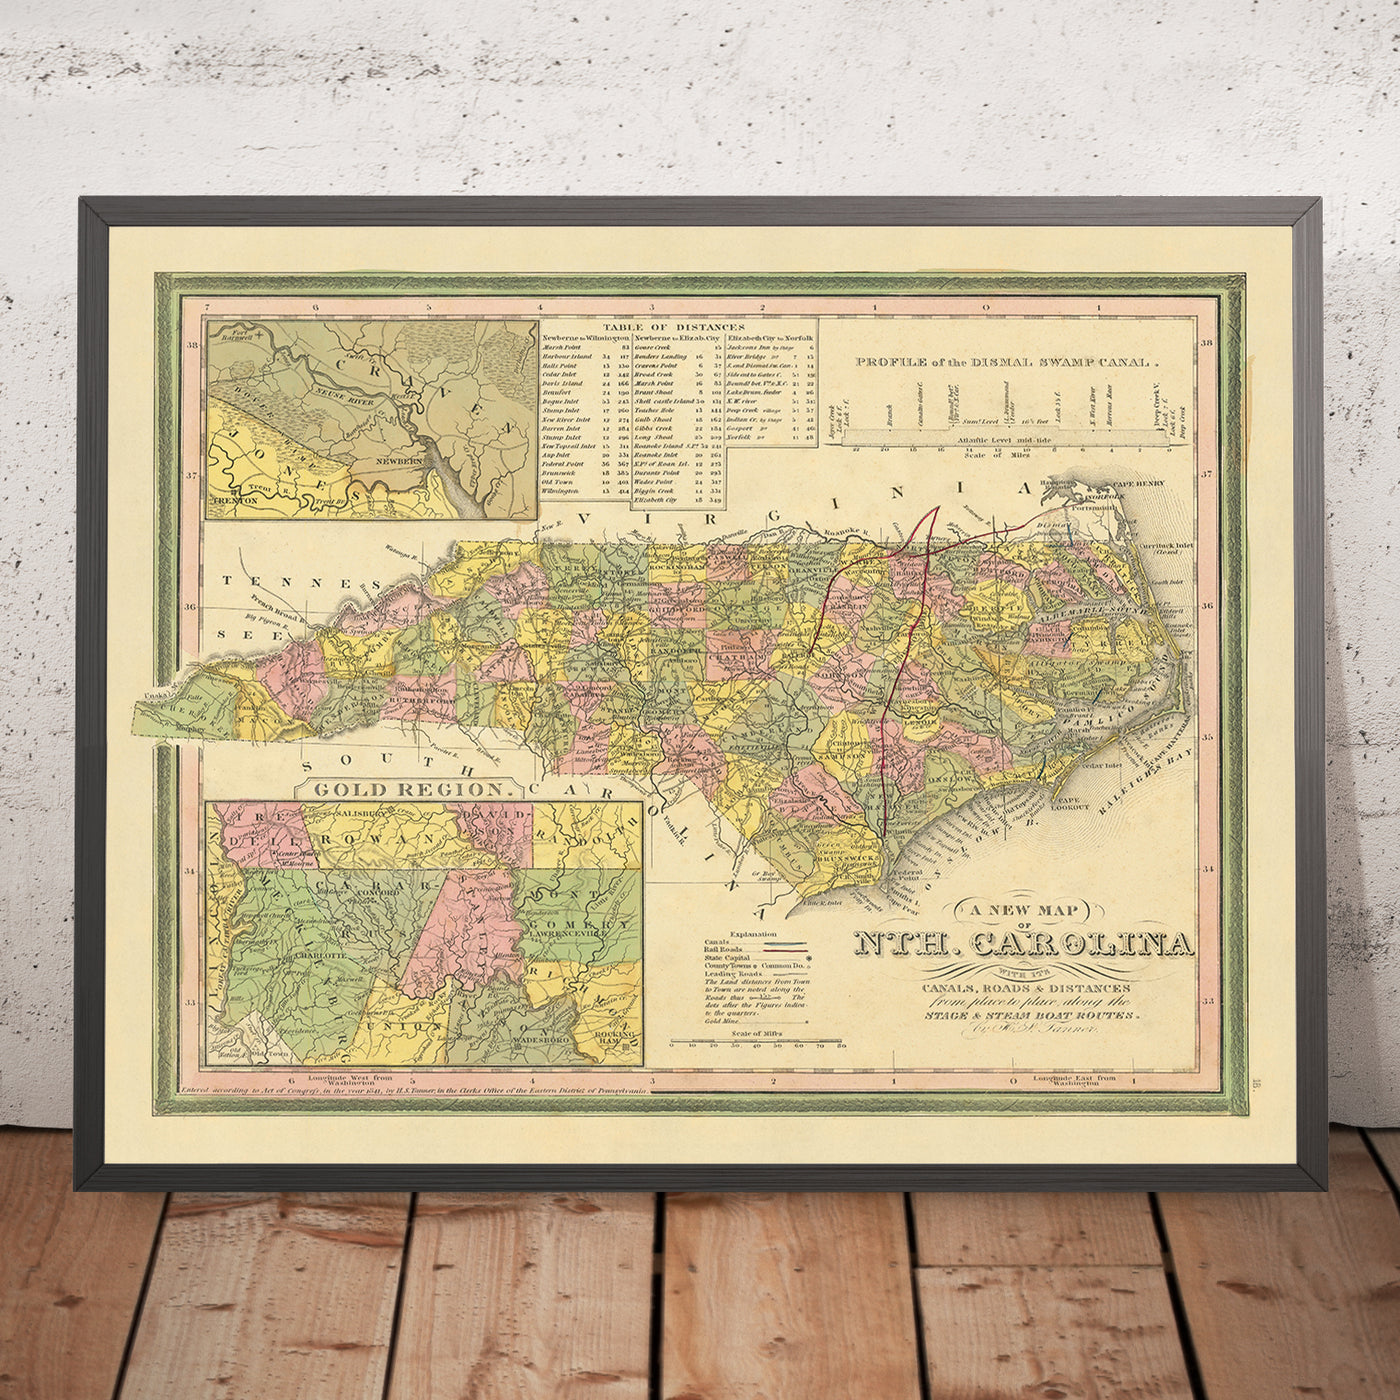 Ancienne carte de la Caroline du Nord par Tanner, 1841 : Raleigh, Charlotte, Asheville, Greensboro et Wilmington